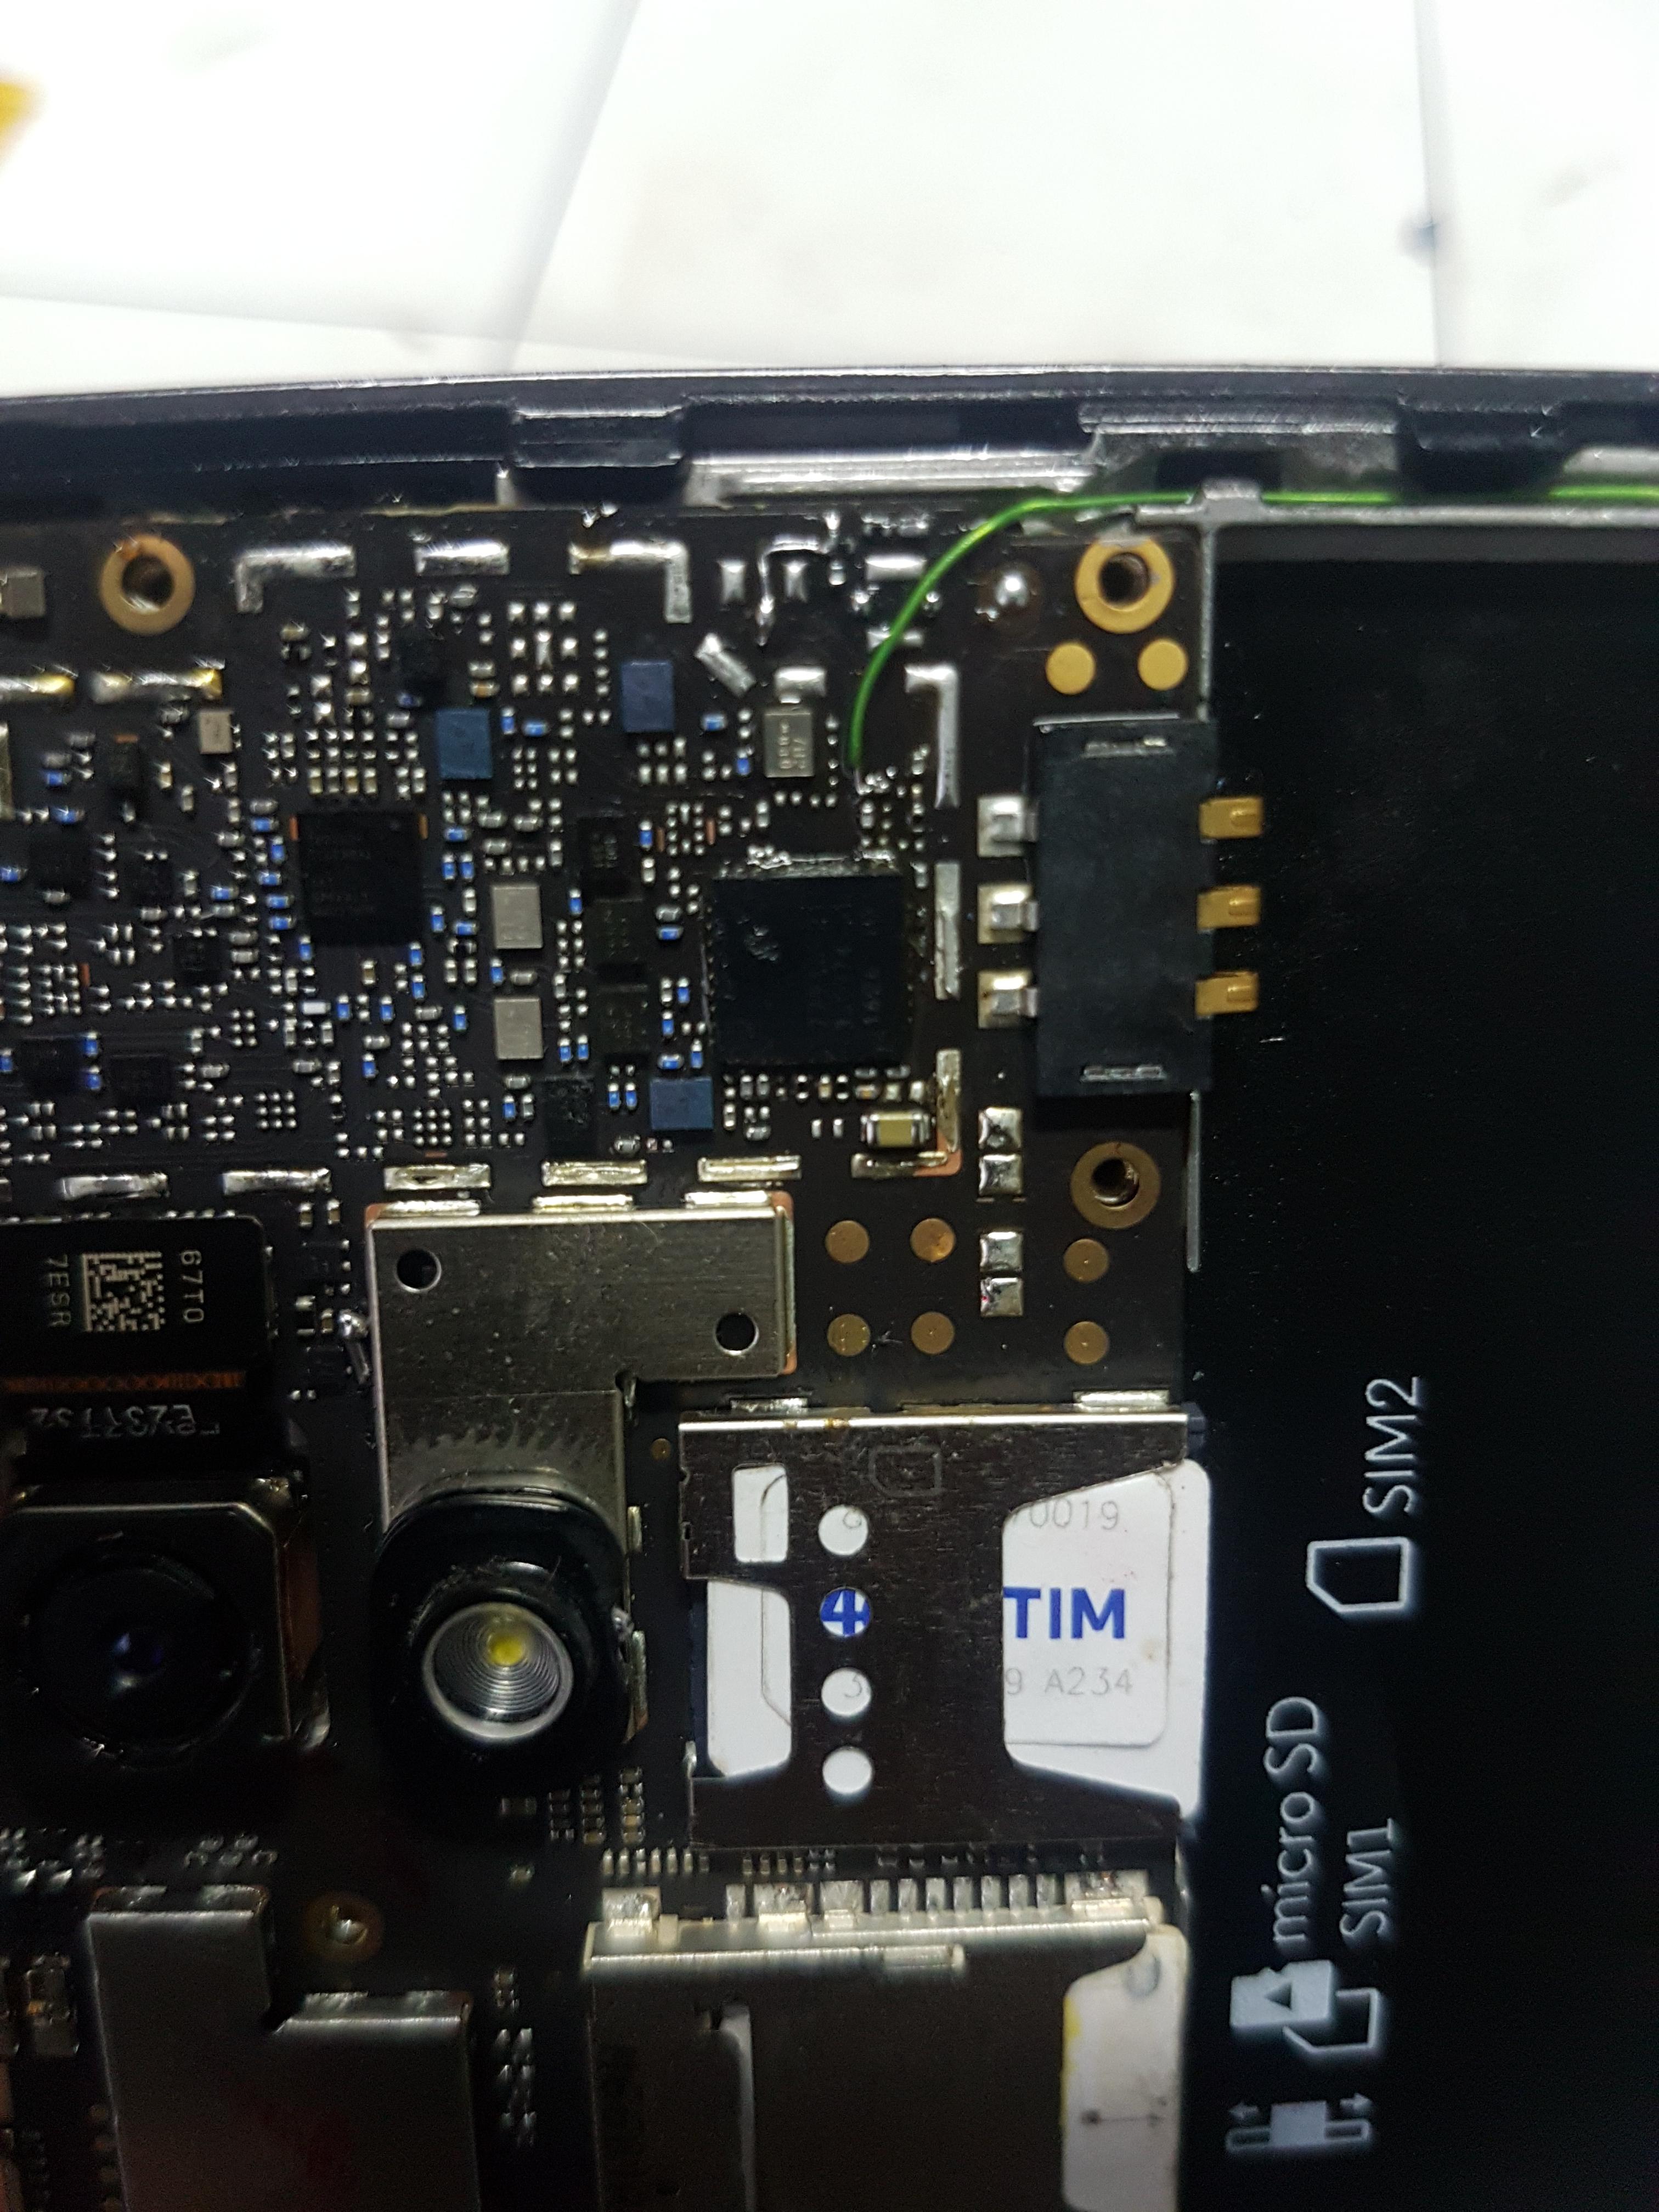 SOLUÇÃO] XT1603 Moto G4 Play - Wifi oscilando ou inativo. - REPAROS NO  HARDWARE - Clan GSM